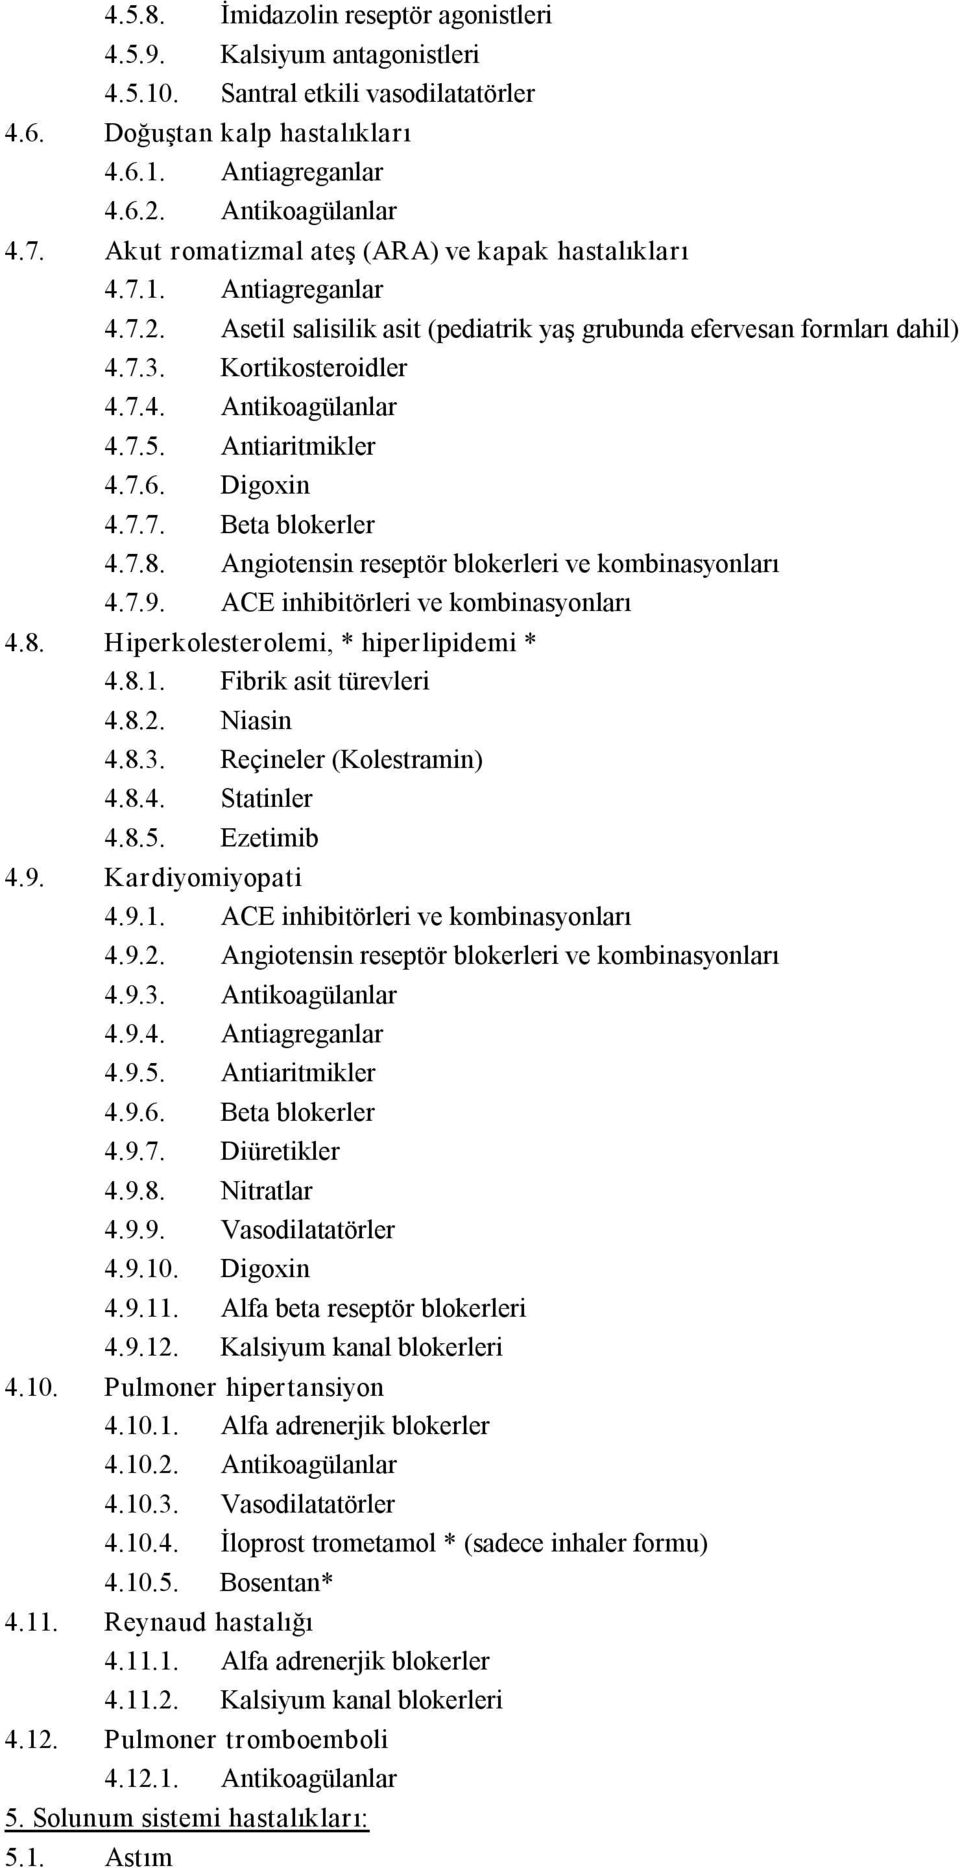 7.5. Antiaritmikler 4.7.6. Digoxin 4.7.7. Beta blokerler 4.7.8. Angiotensin reseptör blokerleri ve kombinasyonları 4.7.9. ACE inhibitörleri ve kombinasyonları 4.8. Hiperkolesterolemi, * hiperlipidemi * 4.